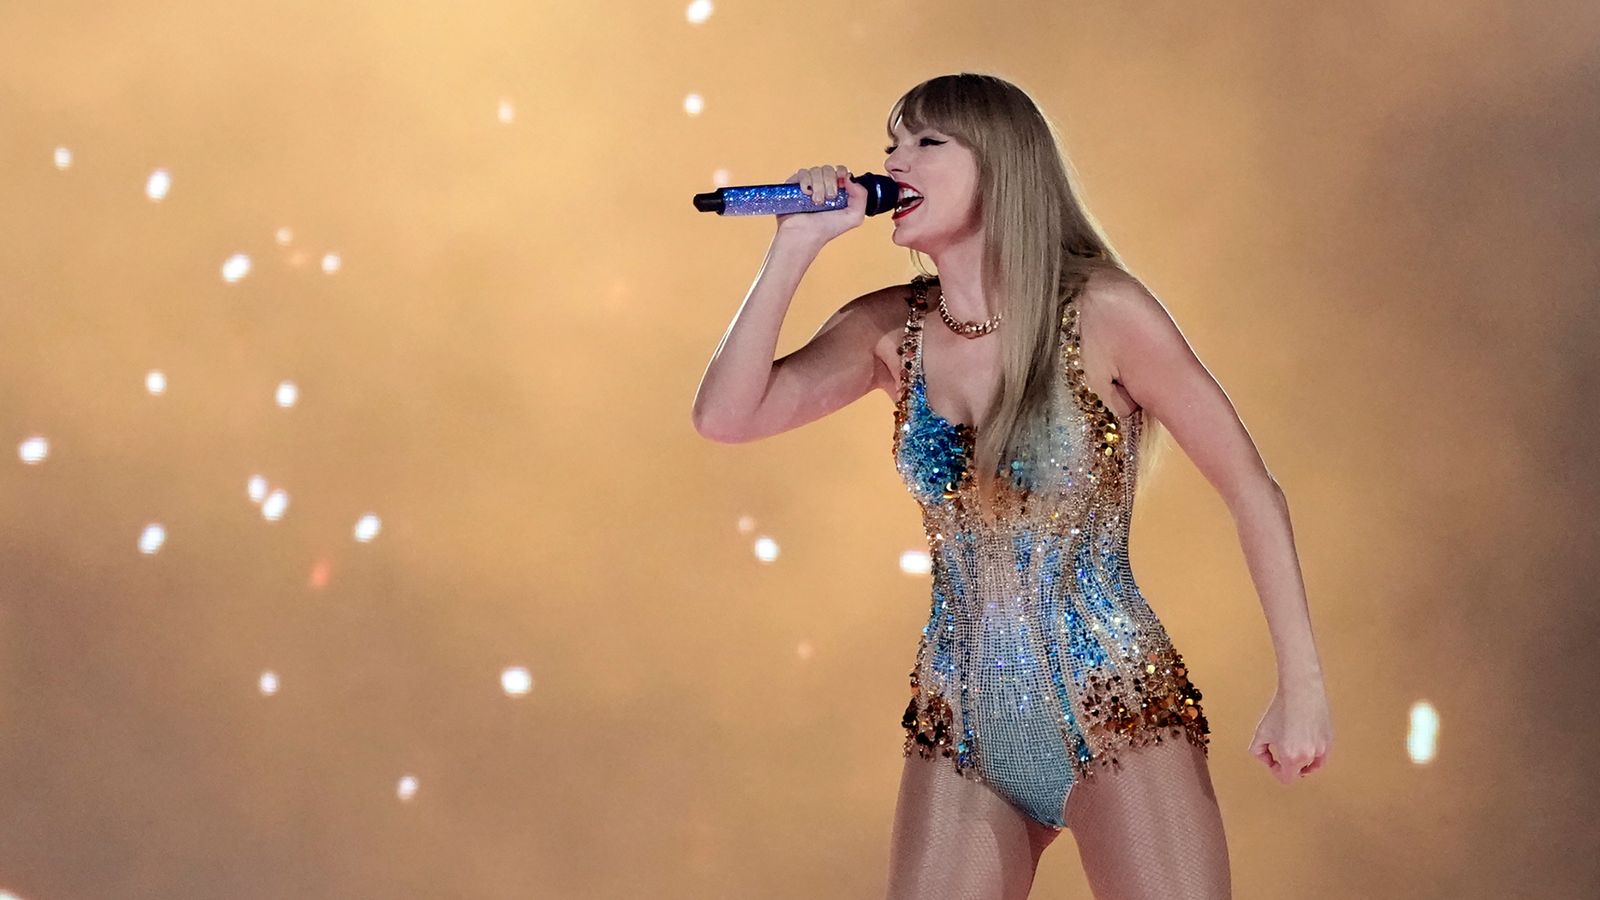 Taylor Swift's Eras Tour Surprise Songs: The List So Far